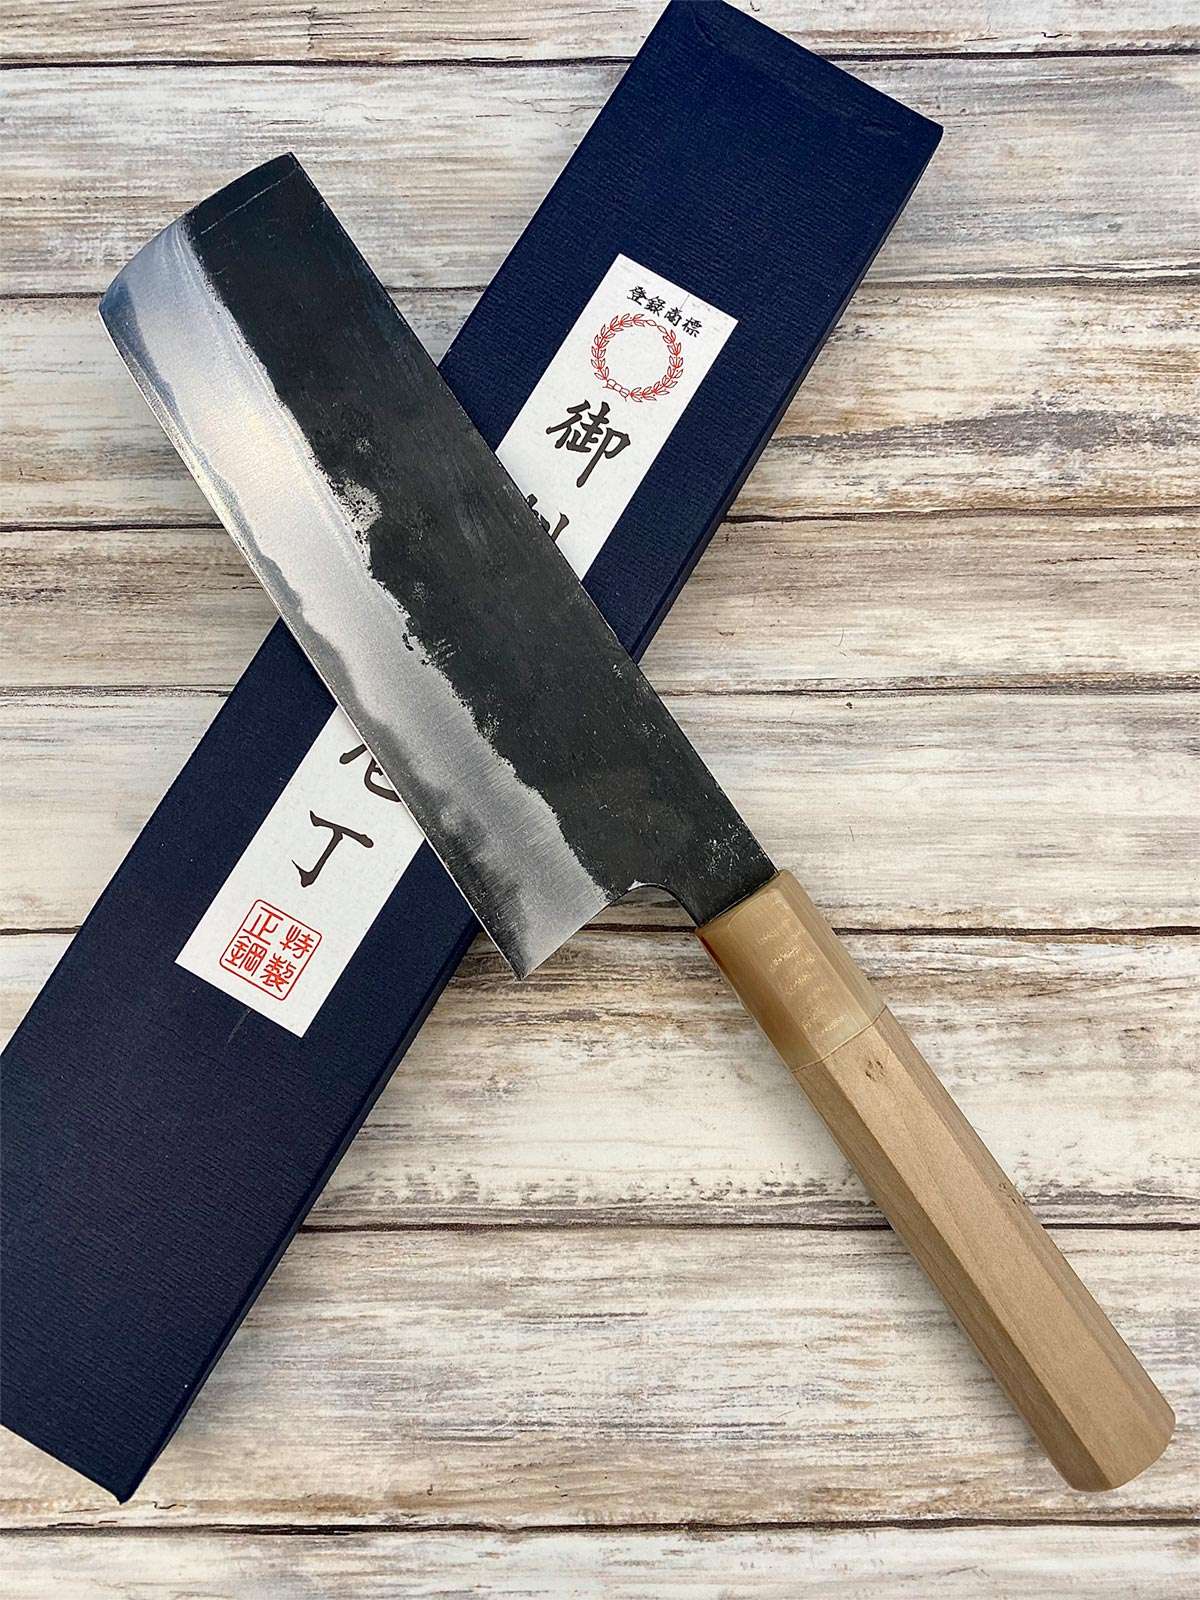 Acheter un Couteau Japonais Nakiri Shirogami#2 16,5 cm à Paris meilleur vente de couteaux de cuisine nippon grande marque de qualité